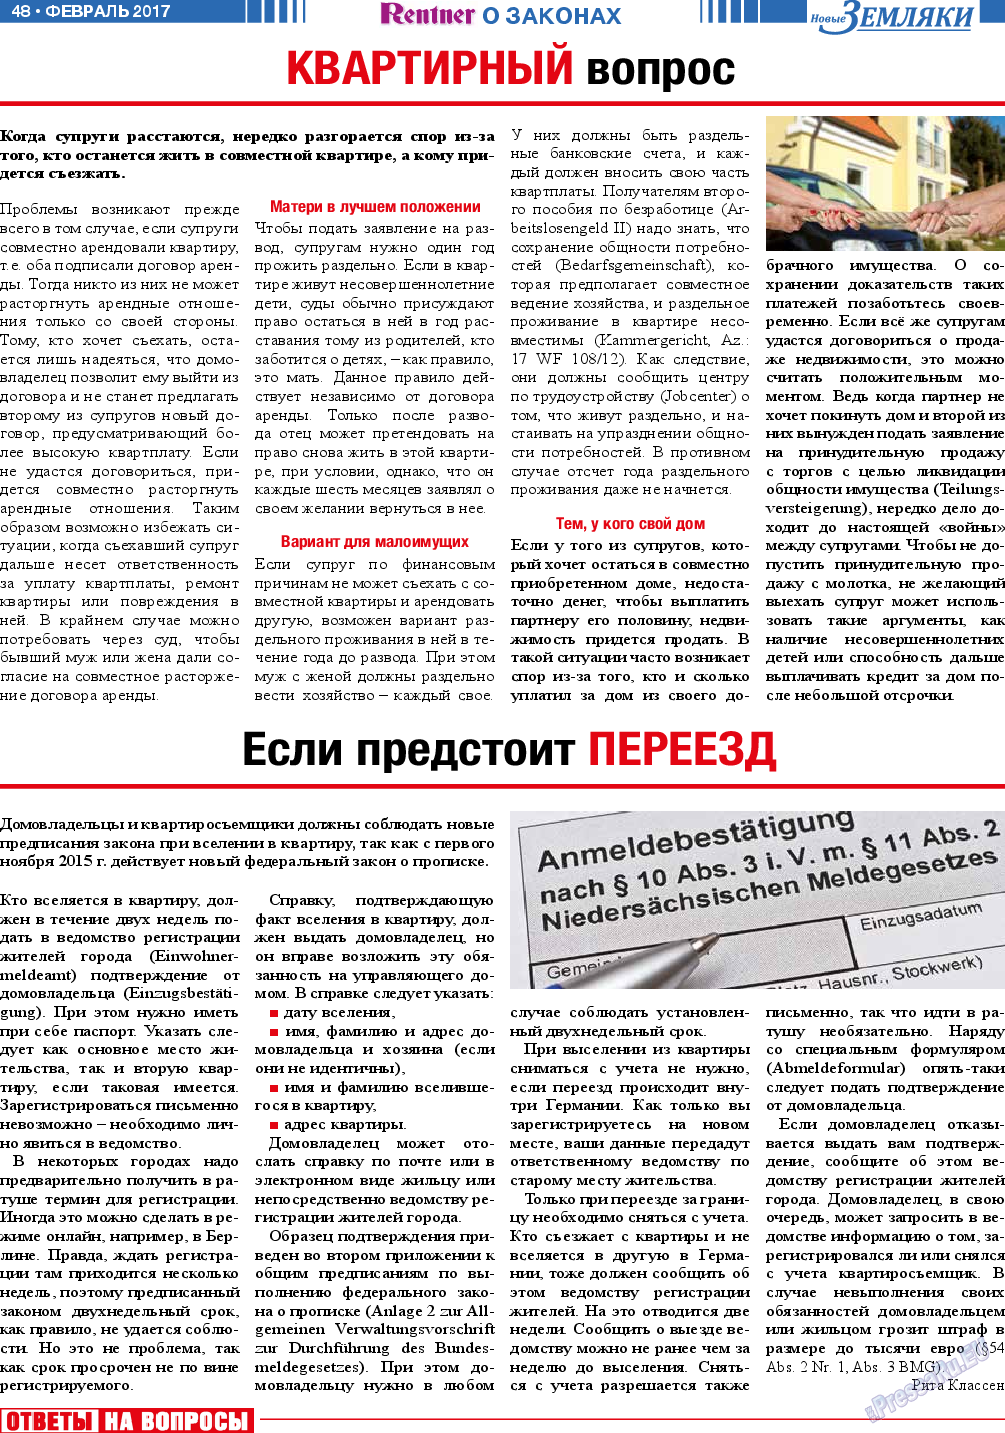 Новые Земляки, газета. 2017 №2 стр.48